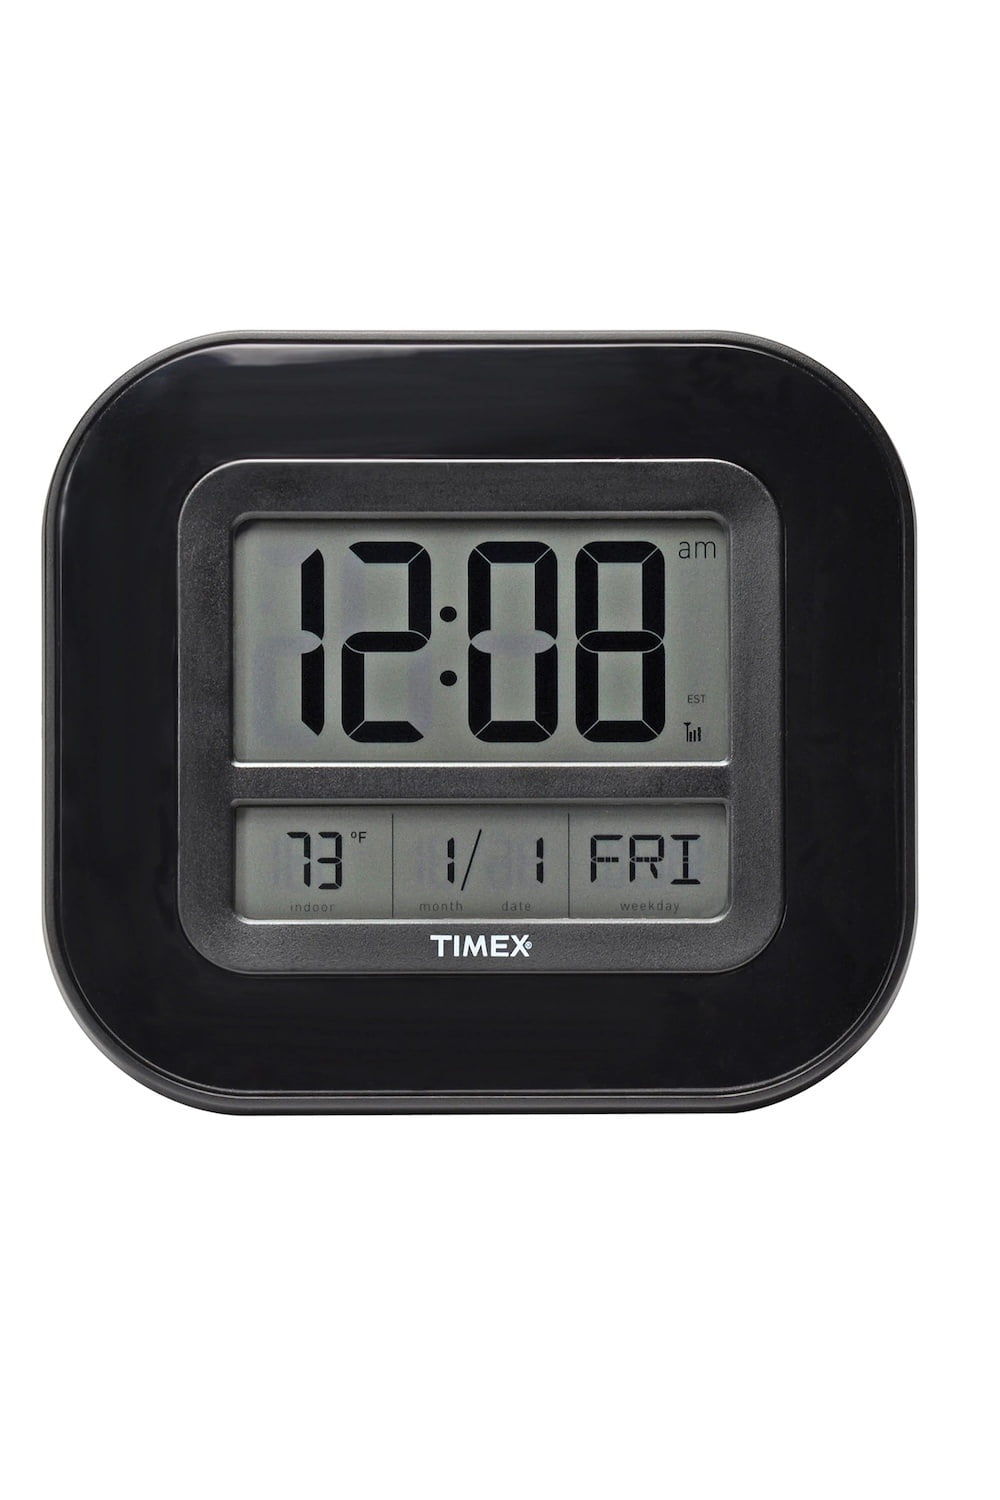 AcuRite Timex Atomic Clock Radio T303T 